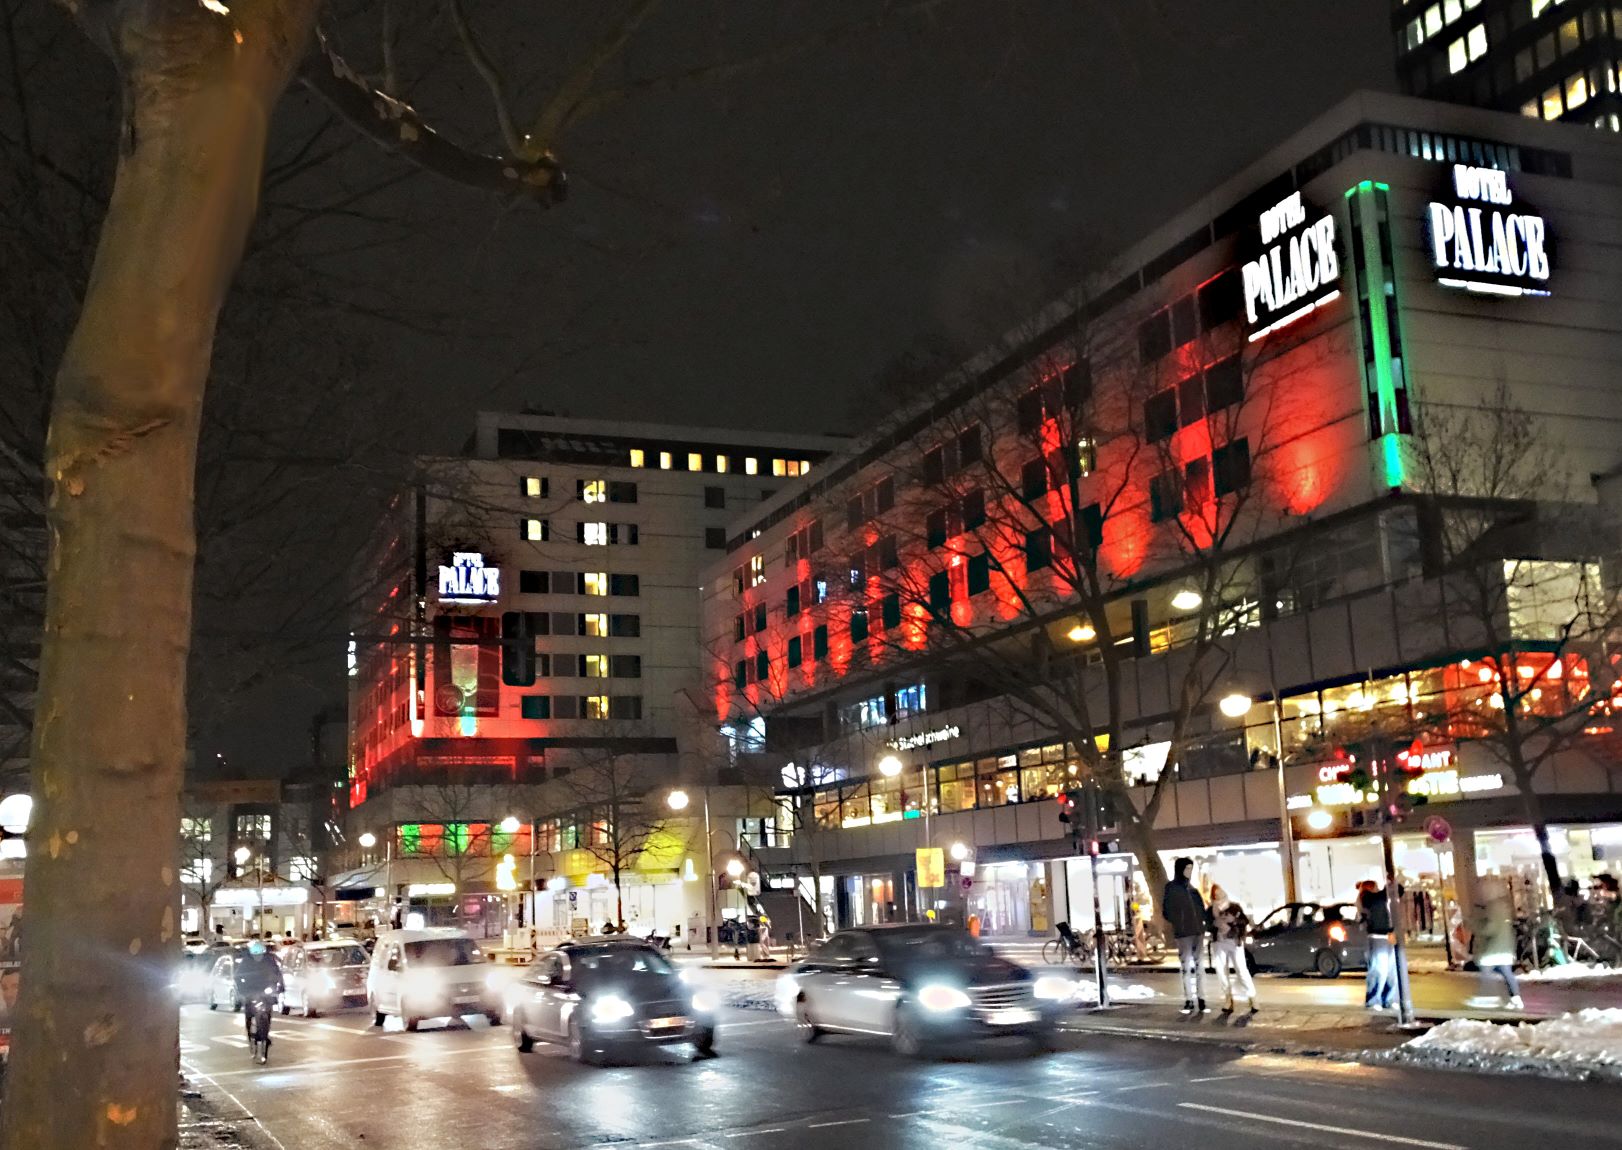 Großstadtflair mit Lichterglanz am Europa Center: das Hotel Palace Berlin. Fotos: Manfred Weghenkel
